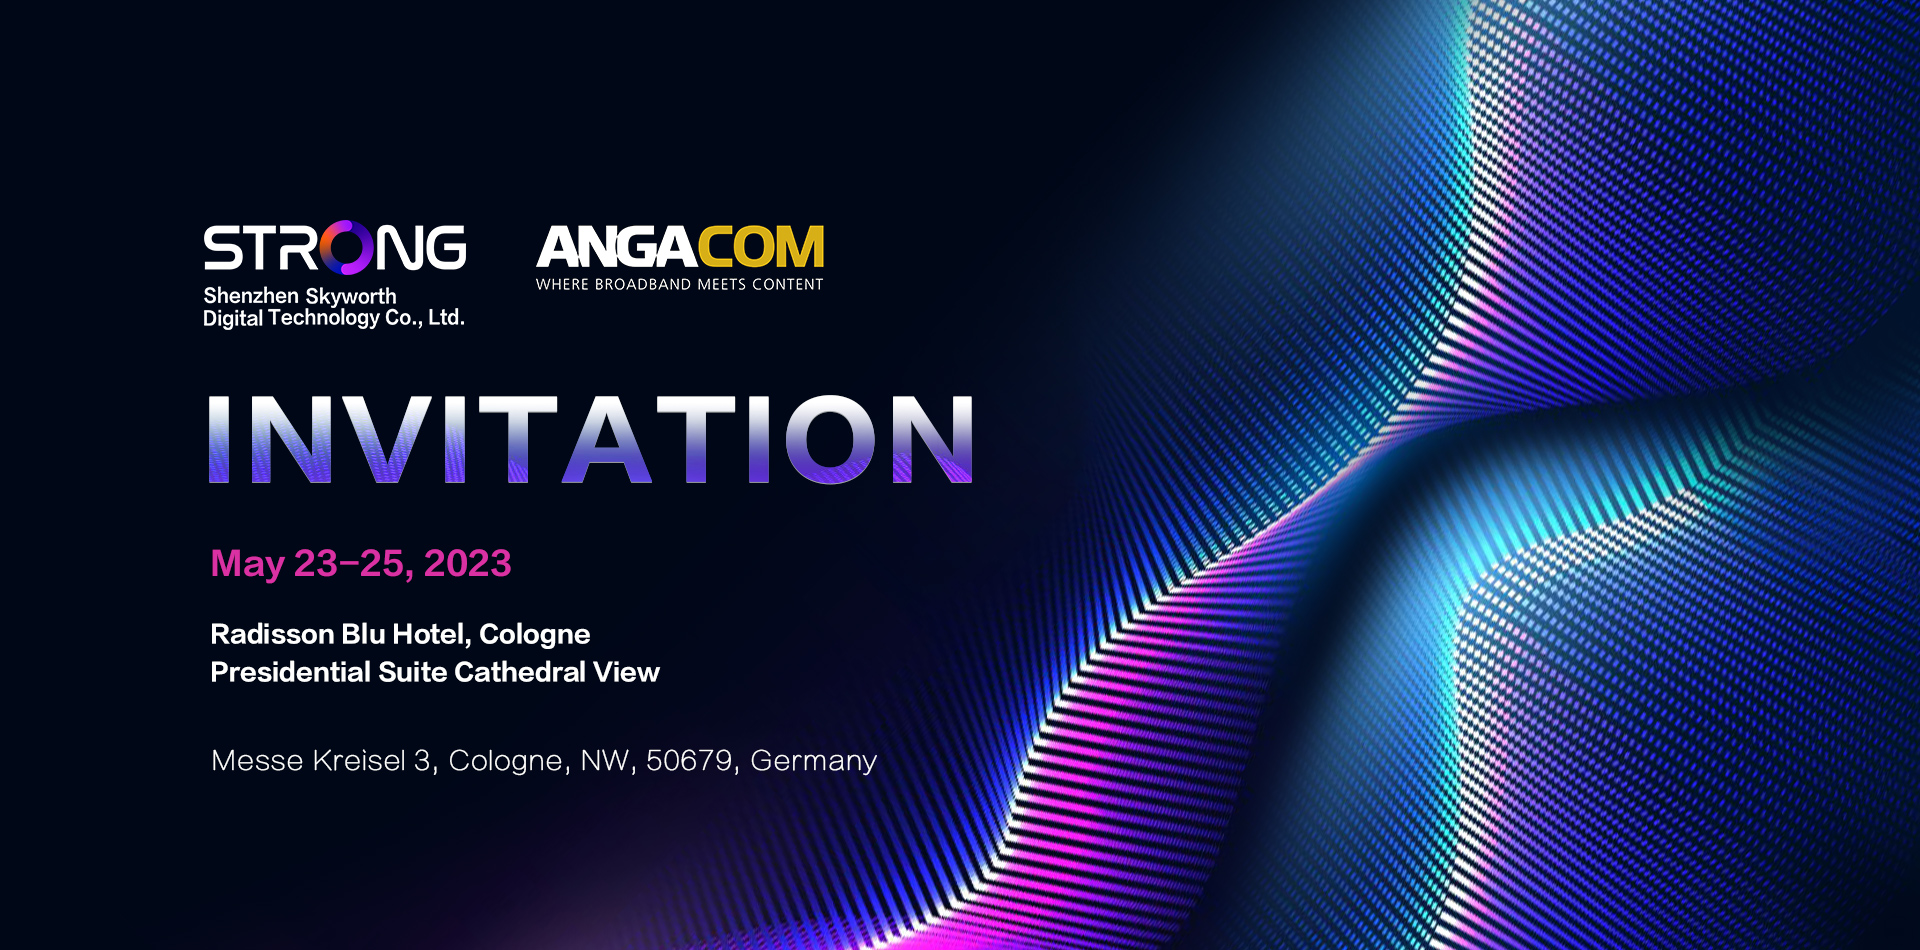 Invitation of ANGA COM 2023